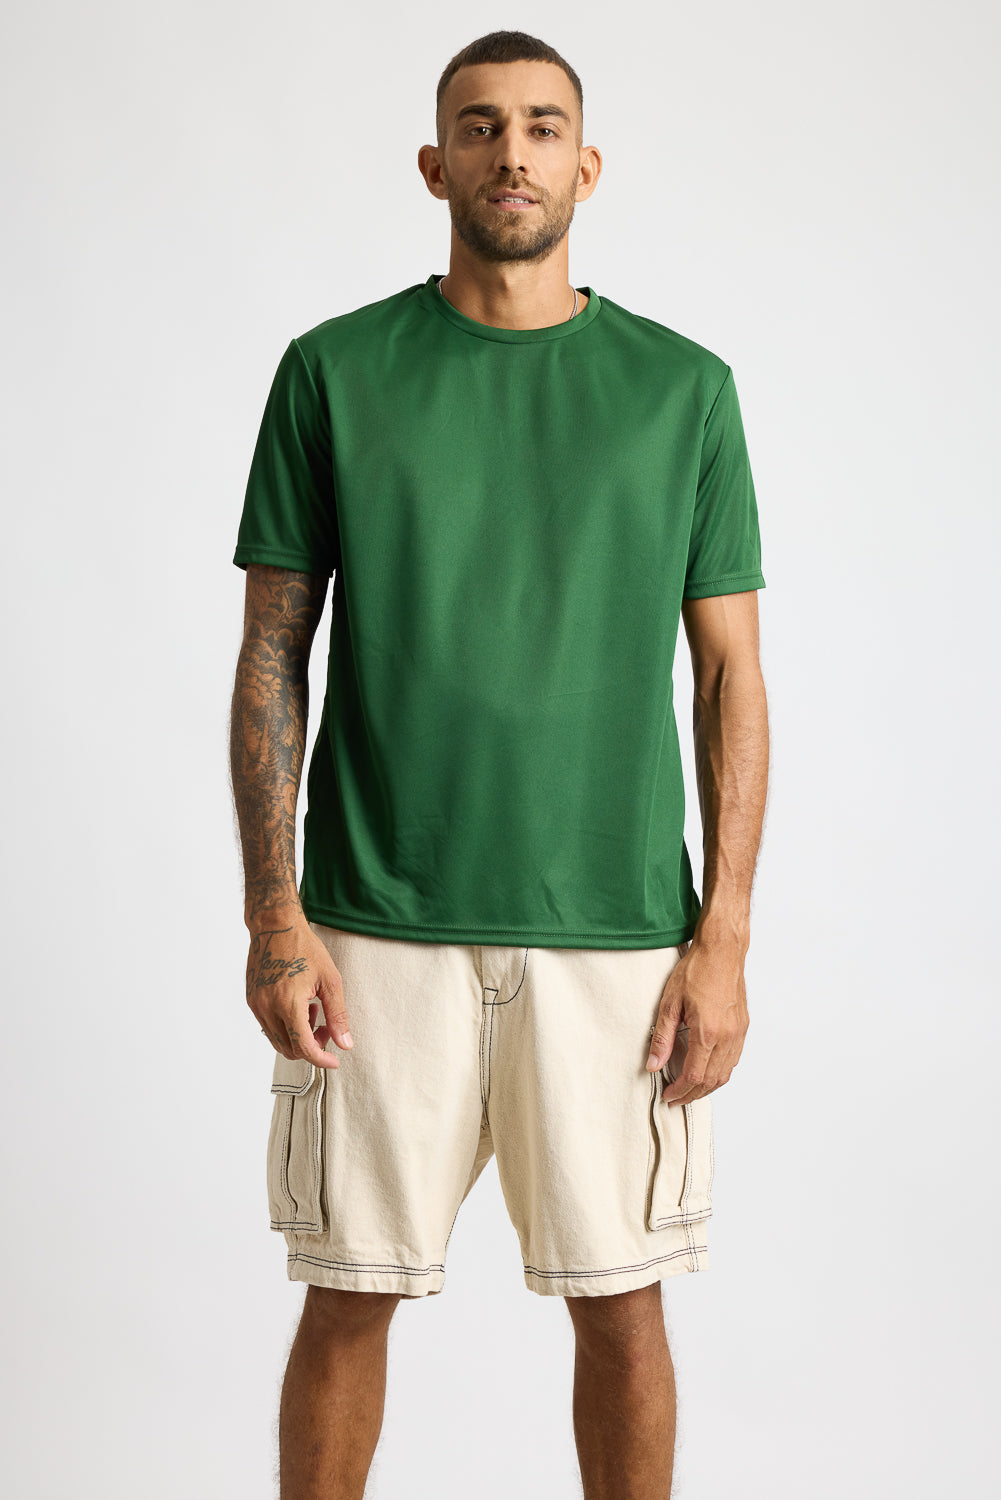 AOP Men's T-shirt - Green